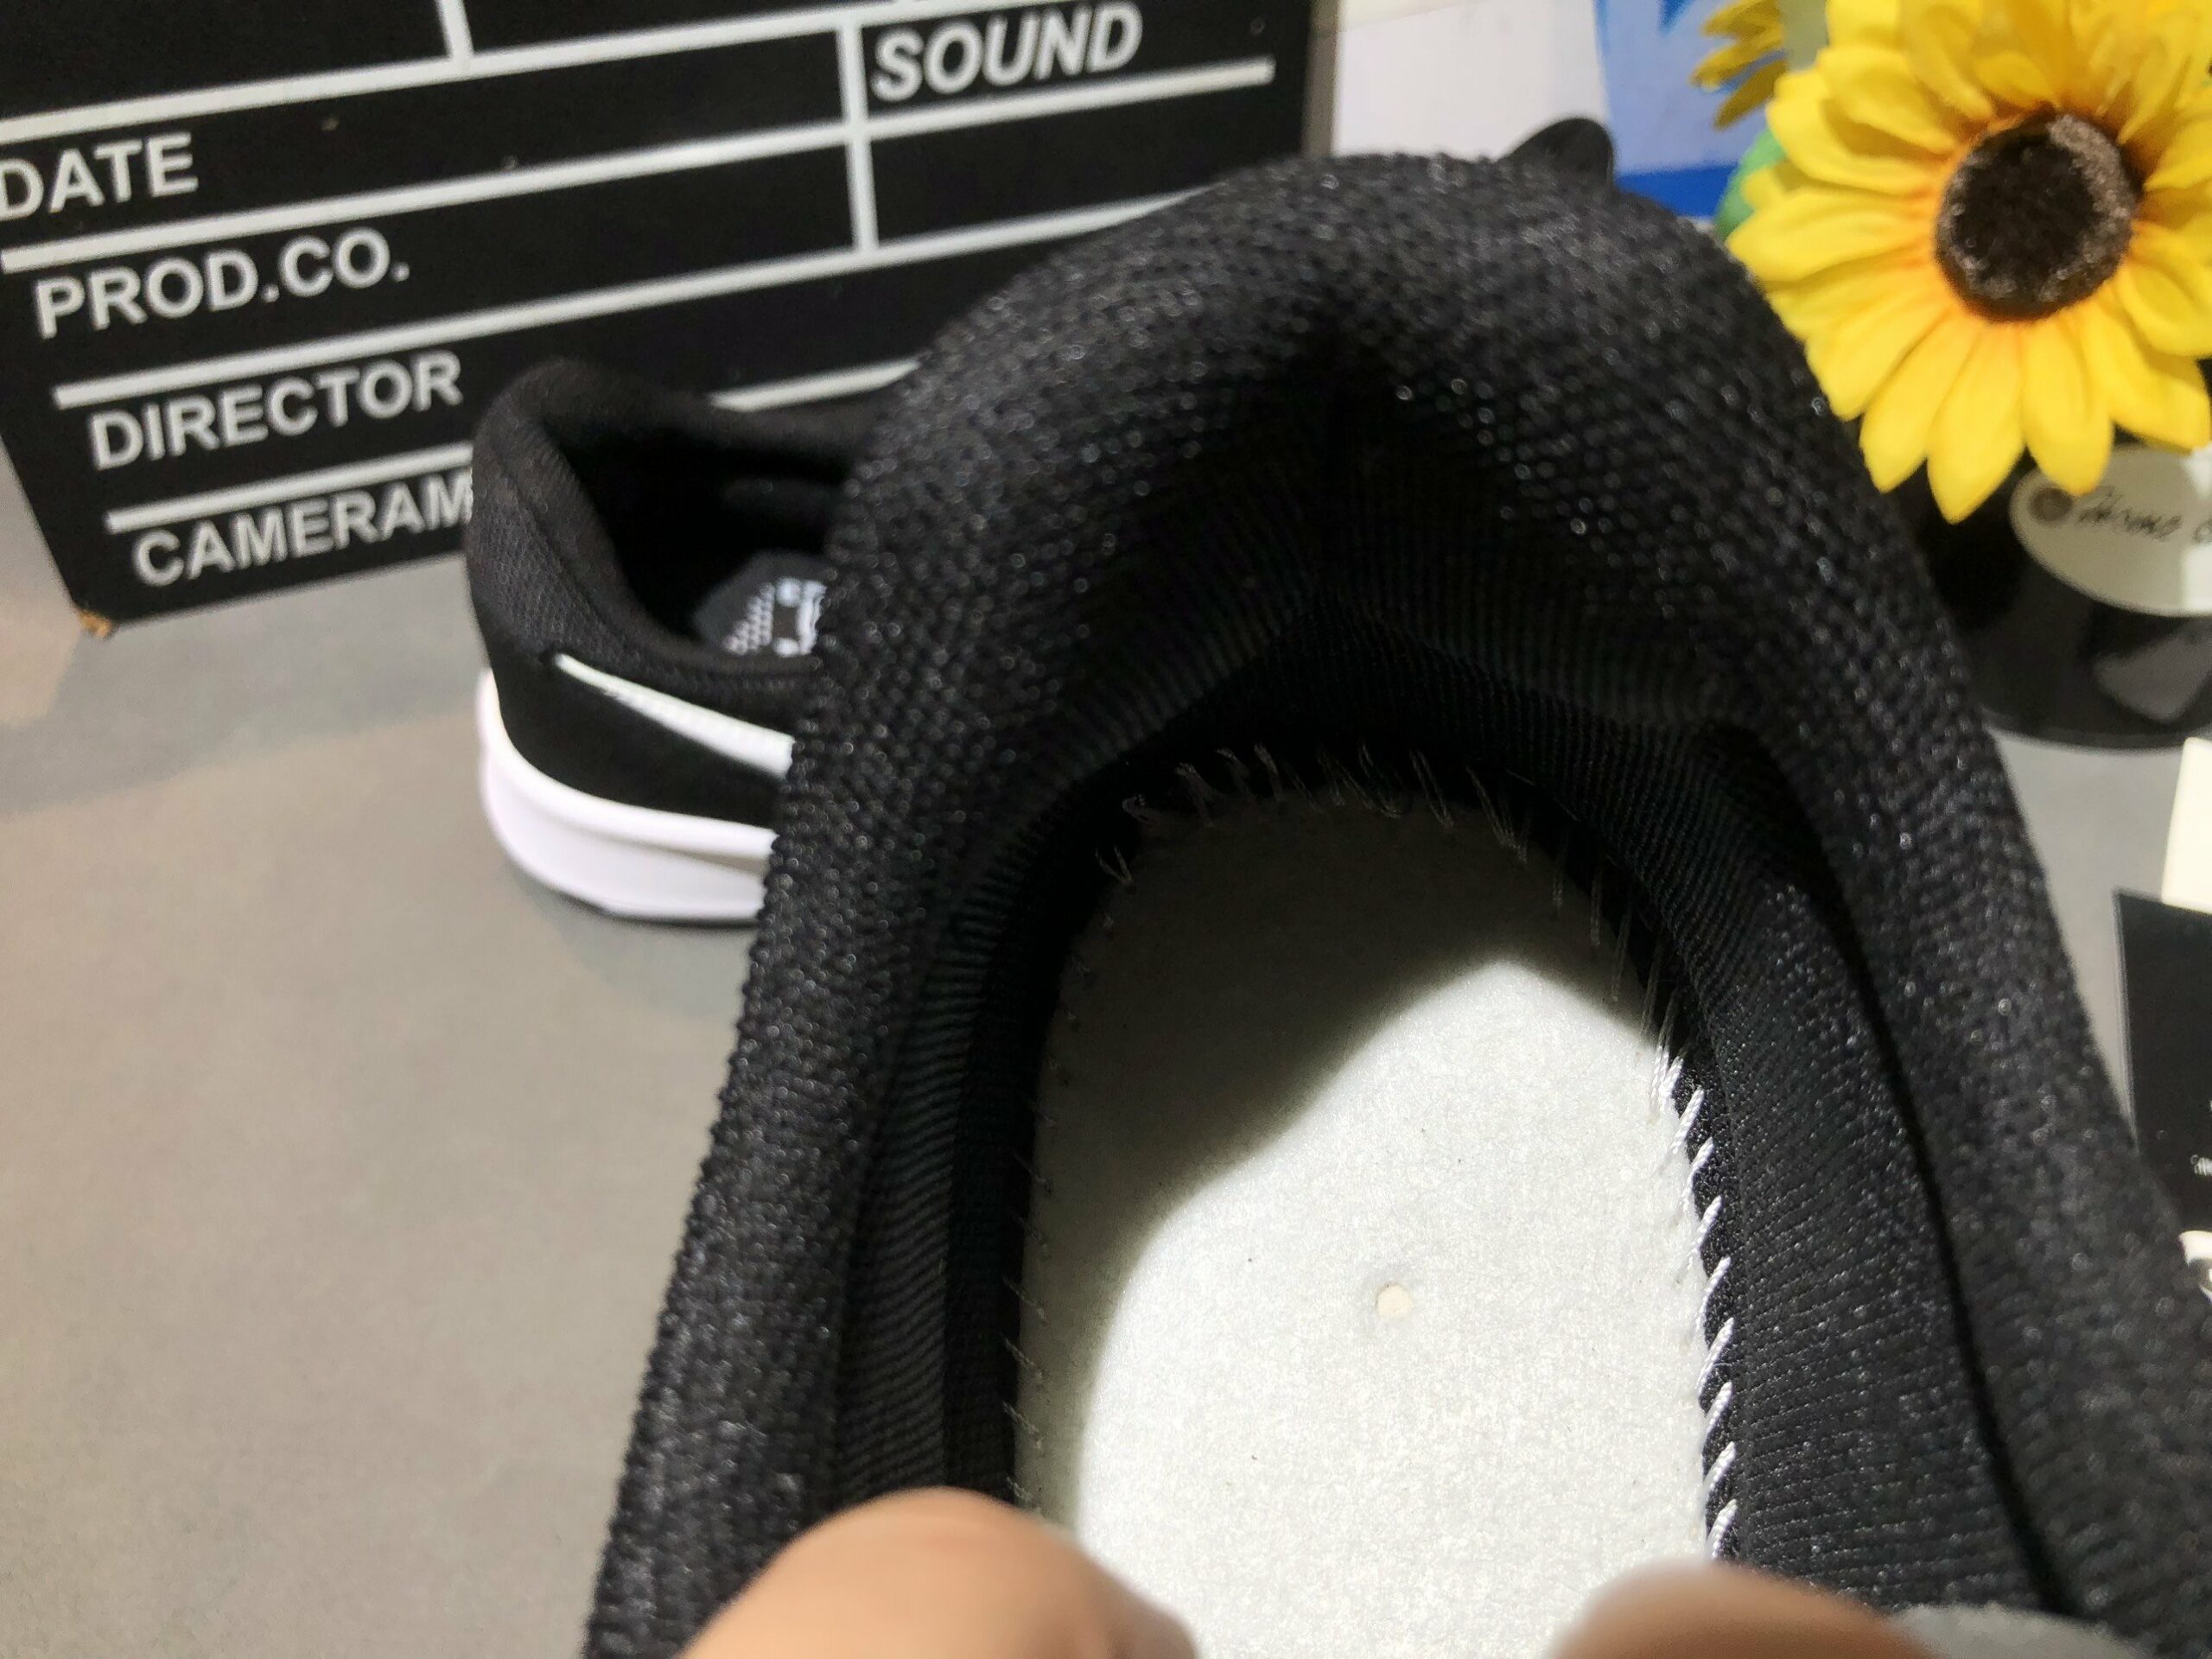 Giày Nike SB Dunk GTS Đen Rep 1:1